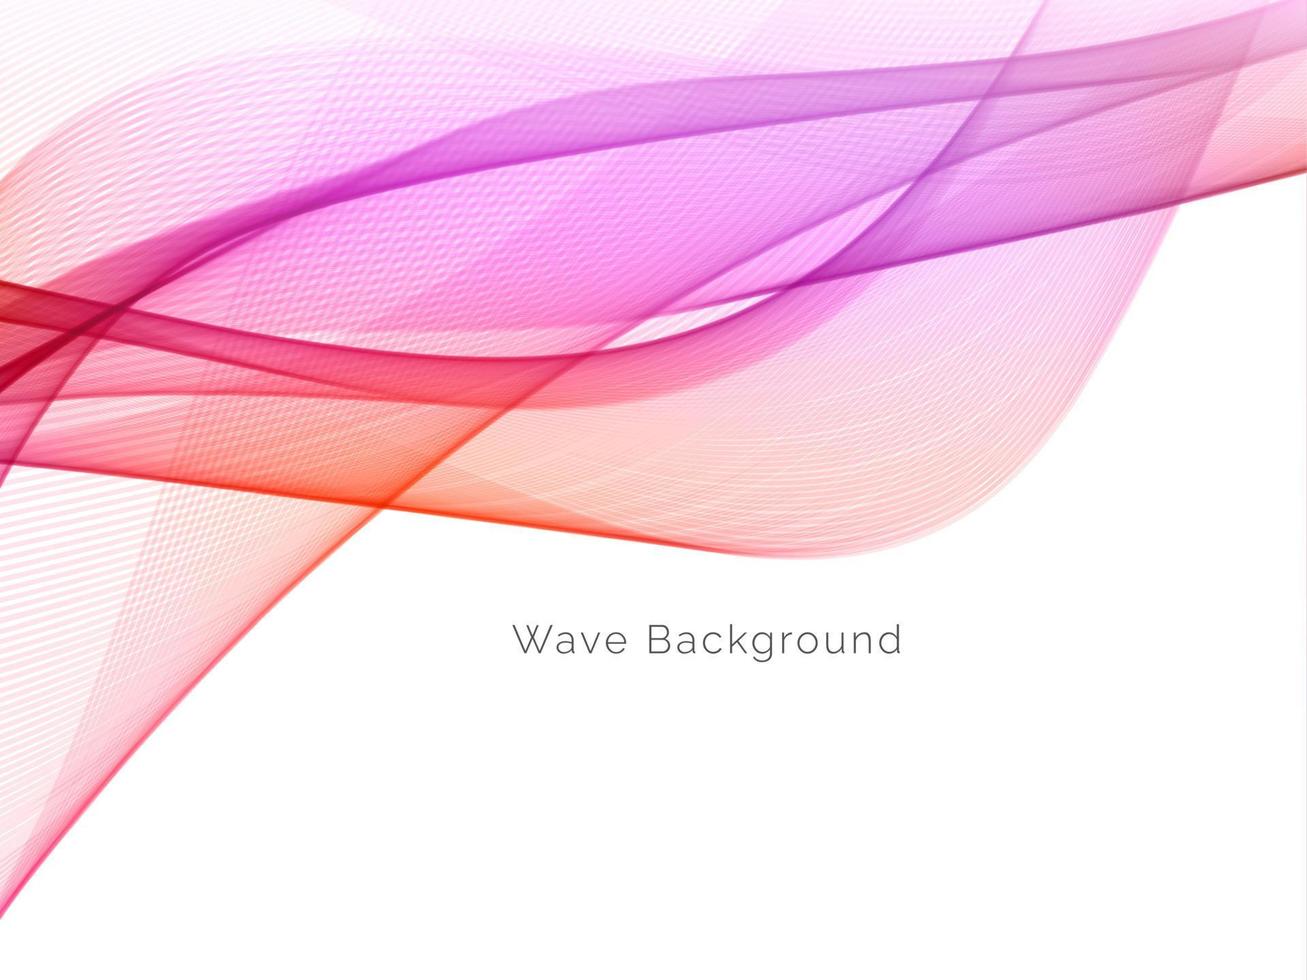 fundo abstrato colorido do estilo da onda de movimento vetor